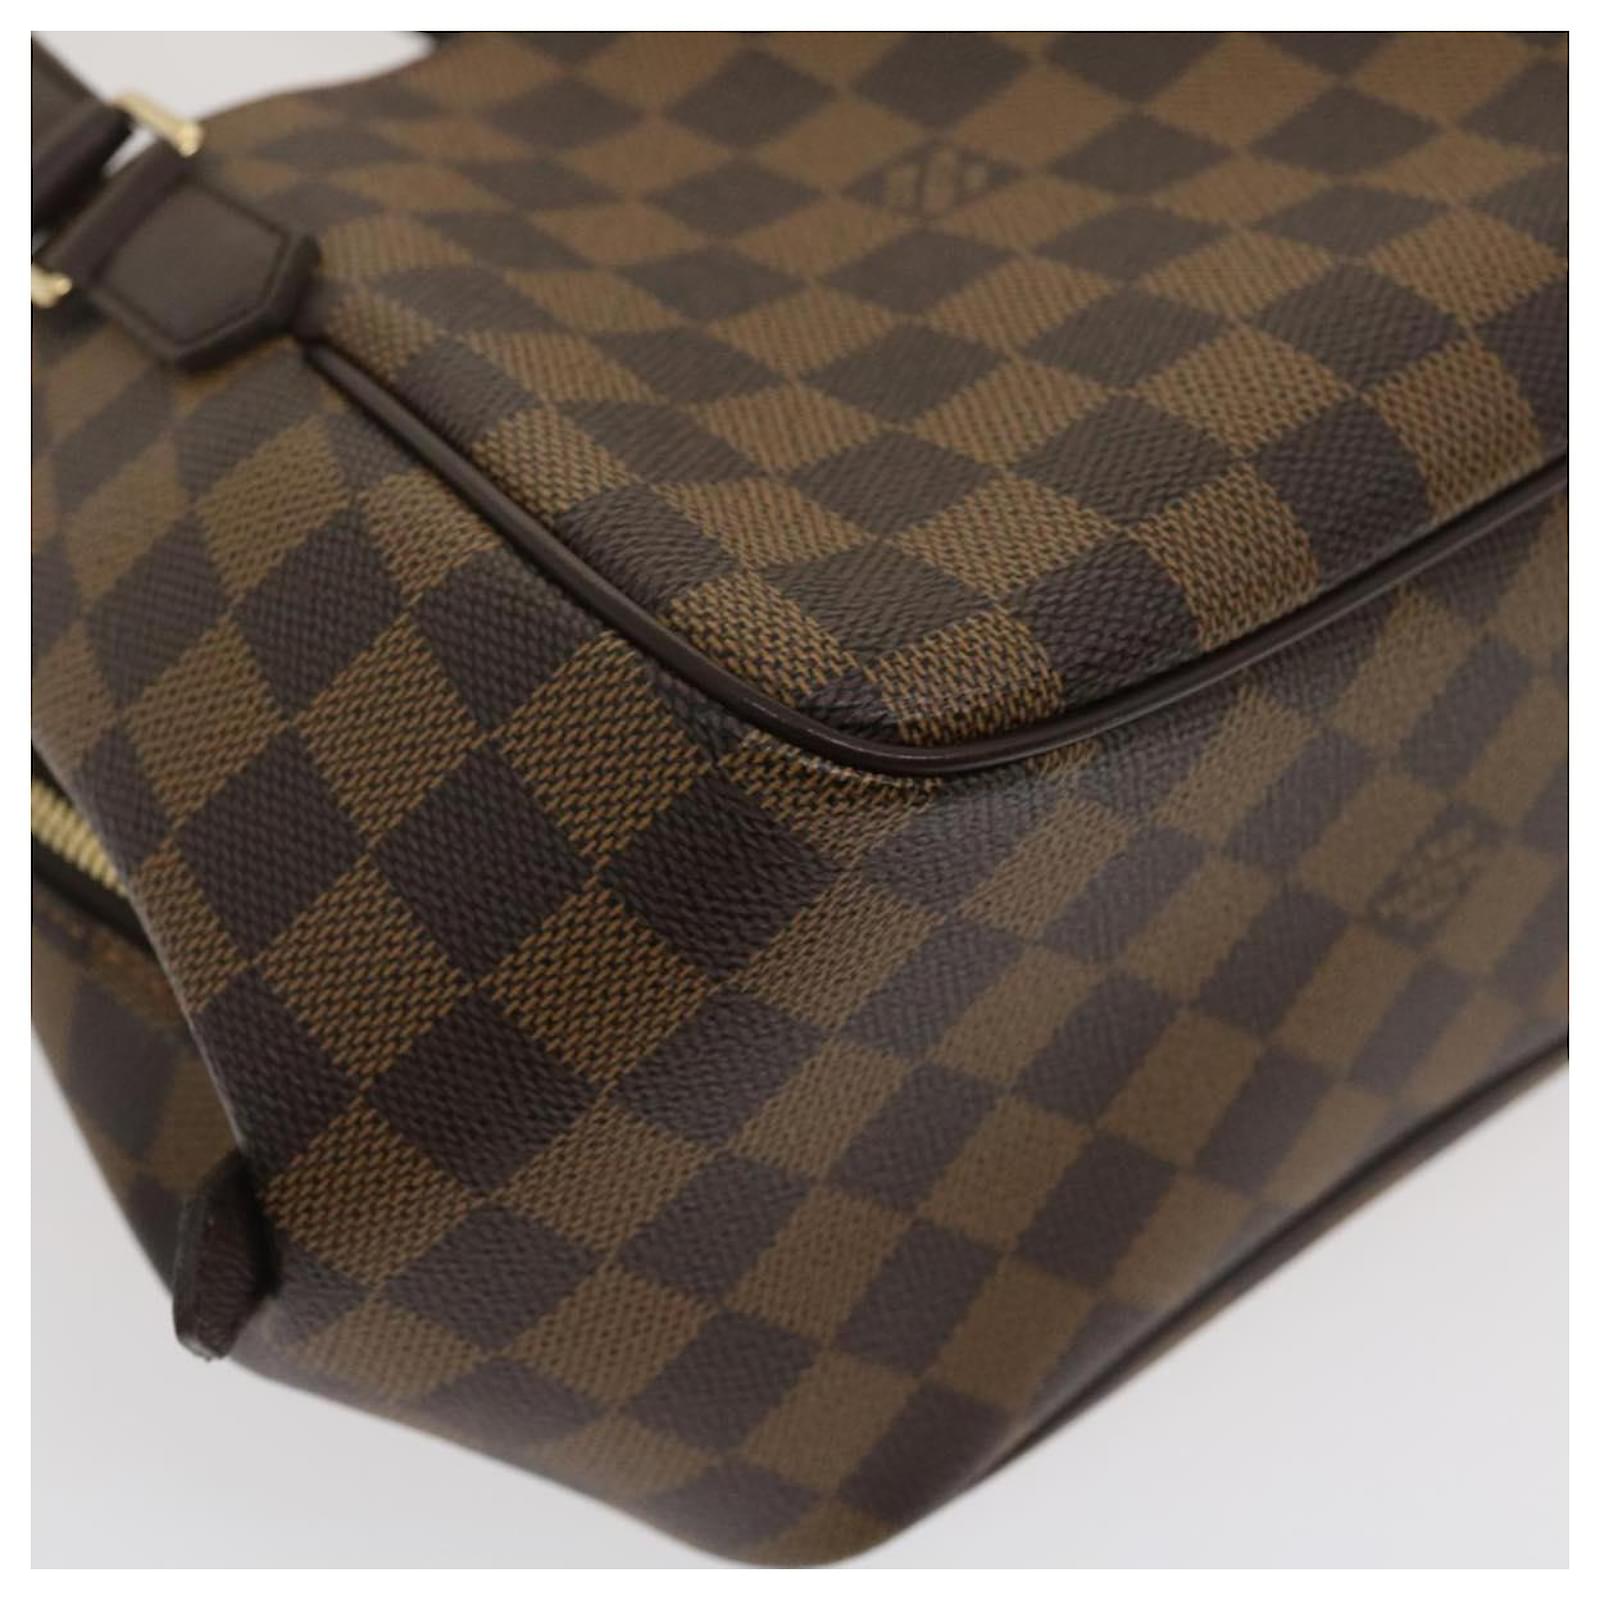 Auth Louis Vuitton Damier Ebene Belem PM N51173 Hand bag 0B270190n"